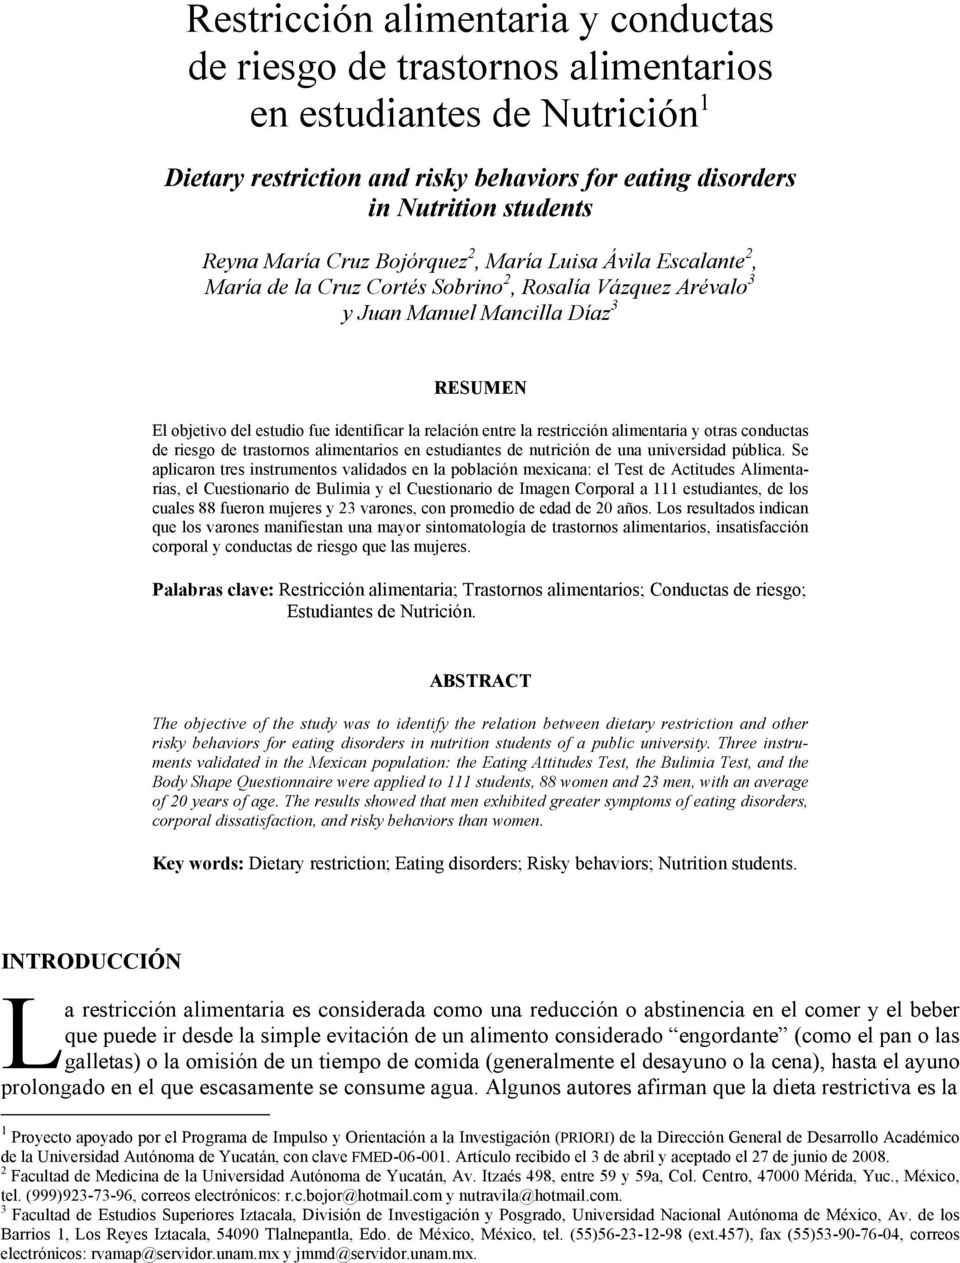 la restricción alimentaria y otras conductas de riesgo de trastornos alimentarios en estudiantes de nutrición de una universidad pública.